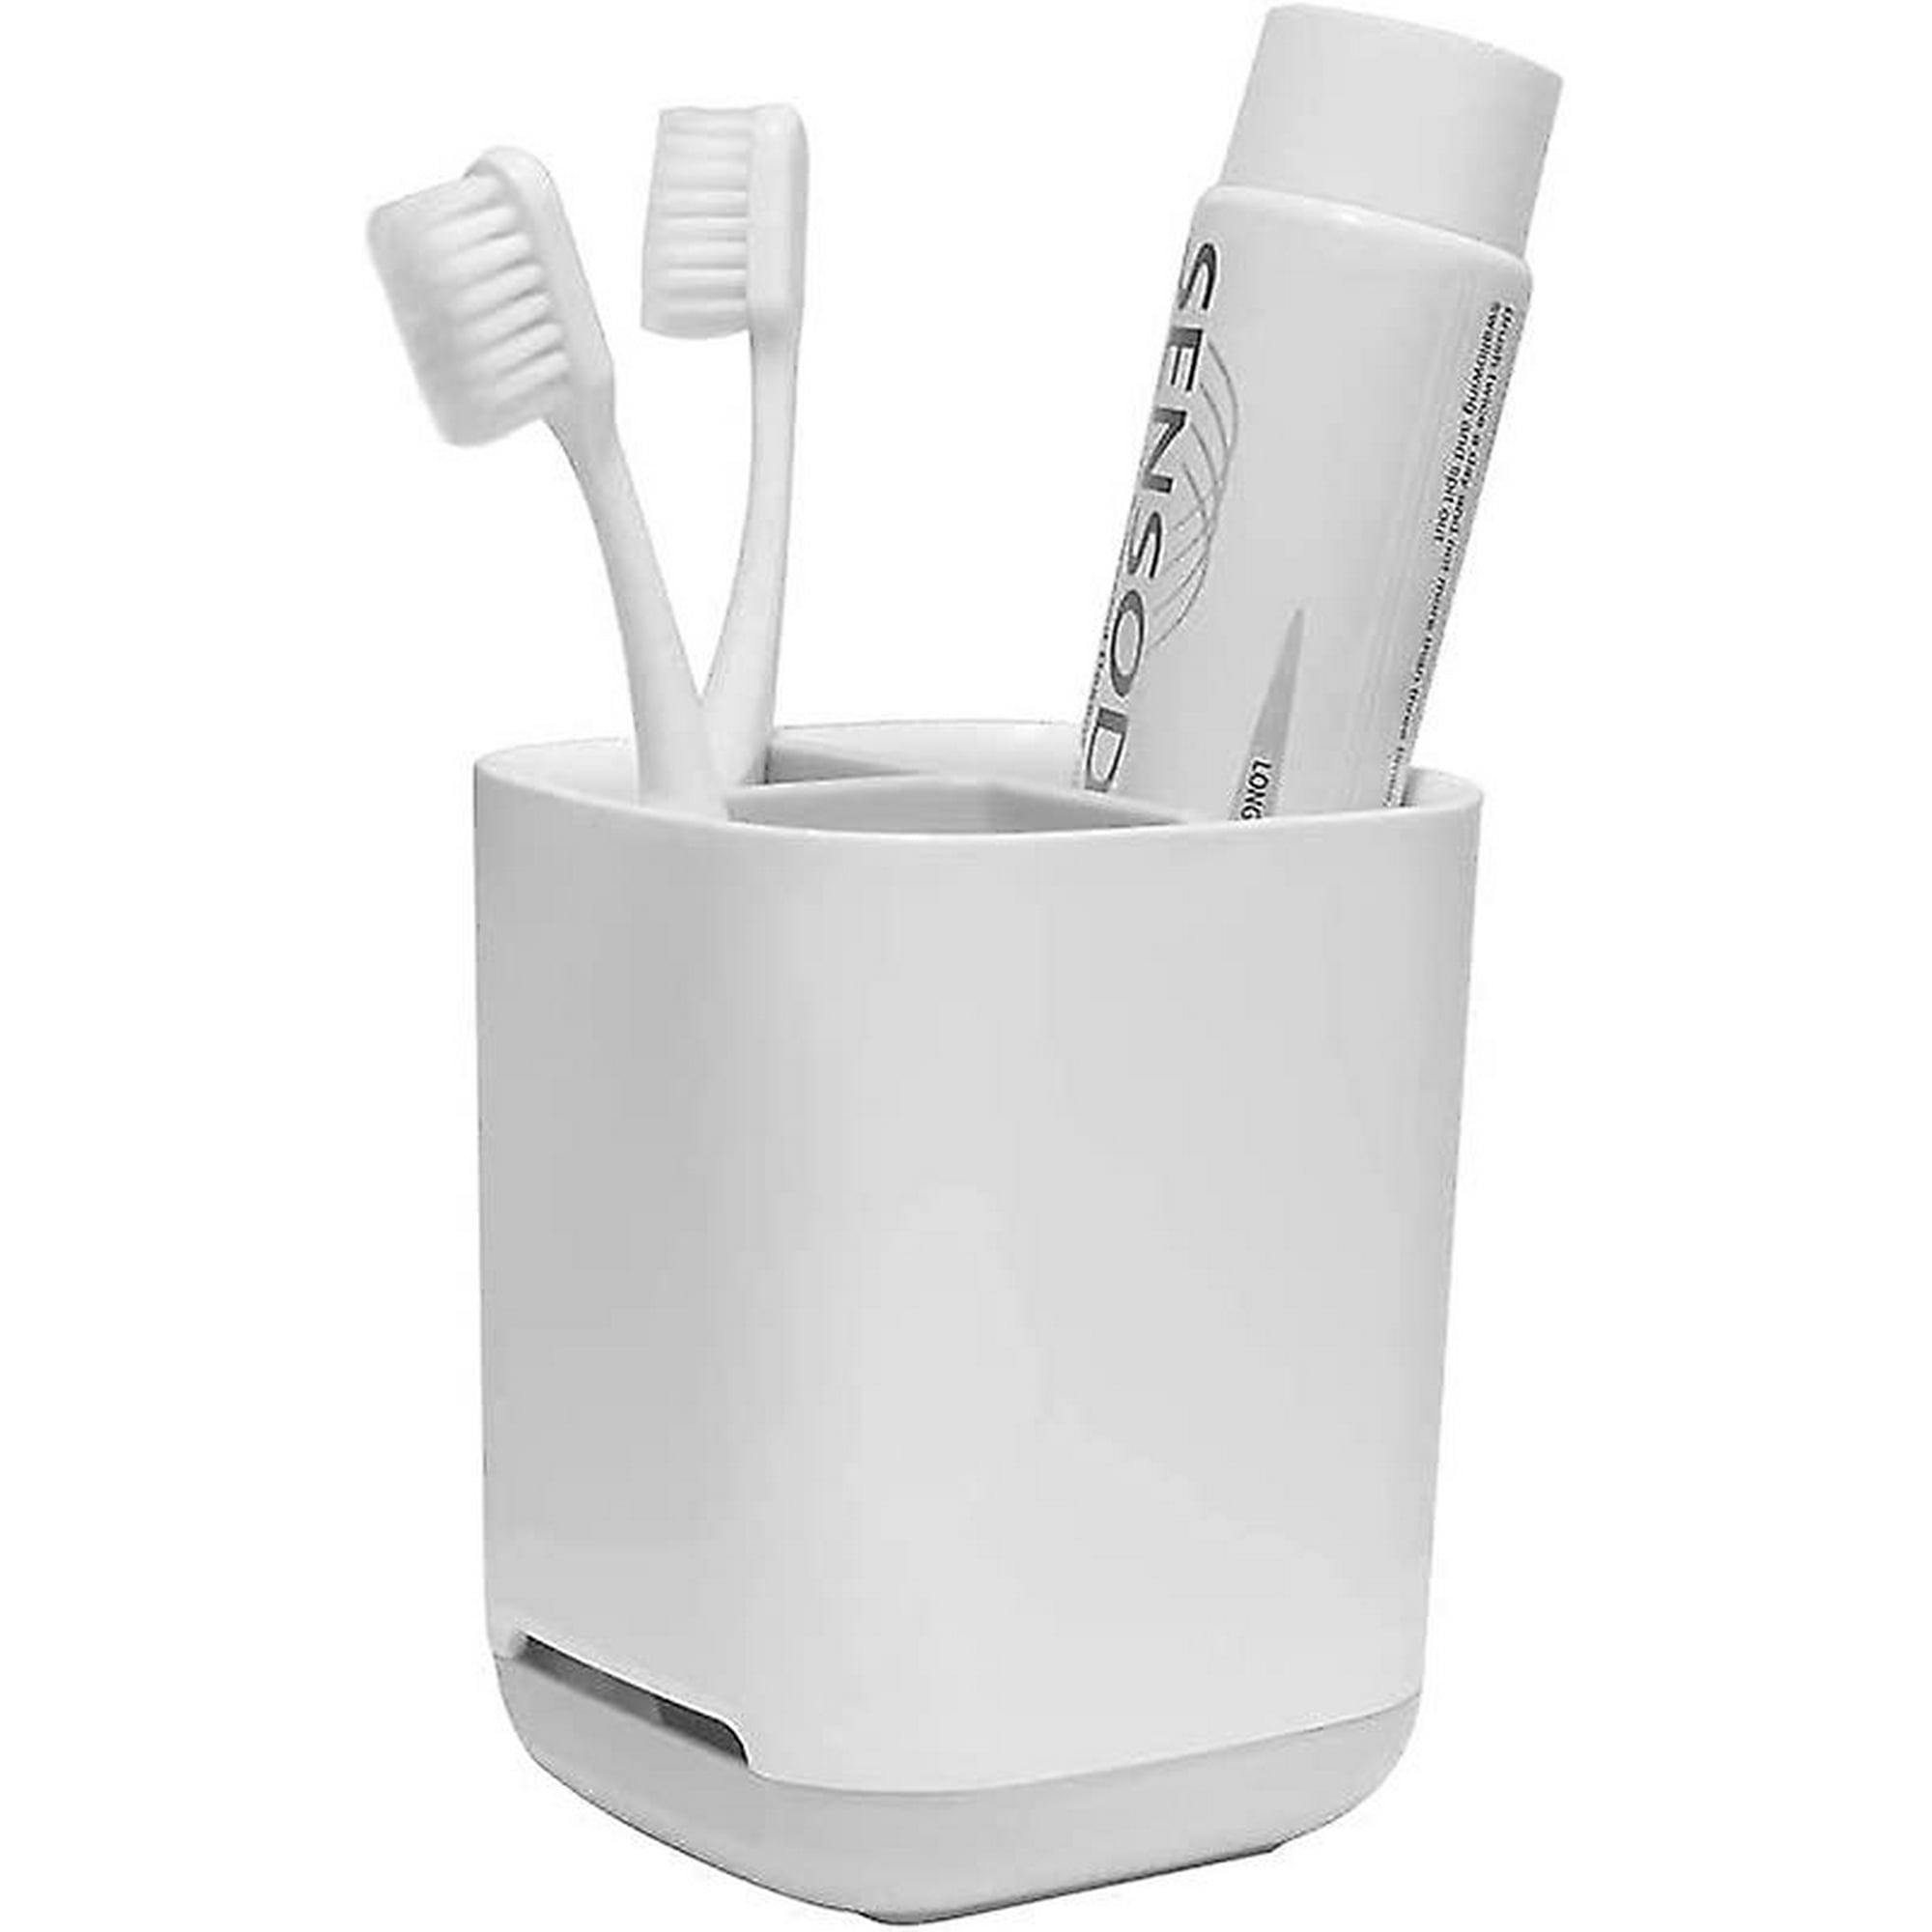  Luvan Pequeño soporte para cepillos de dientes eléctrico para  baño y pasta de dientes, hecho de plástico PP y ABS de grado alimenticio,  sin BPA, almacenamiento versátil, desmontable para una fácil 